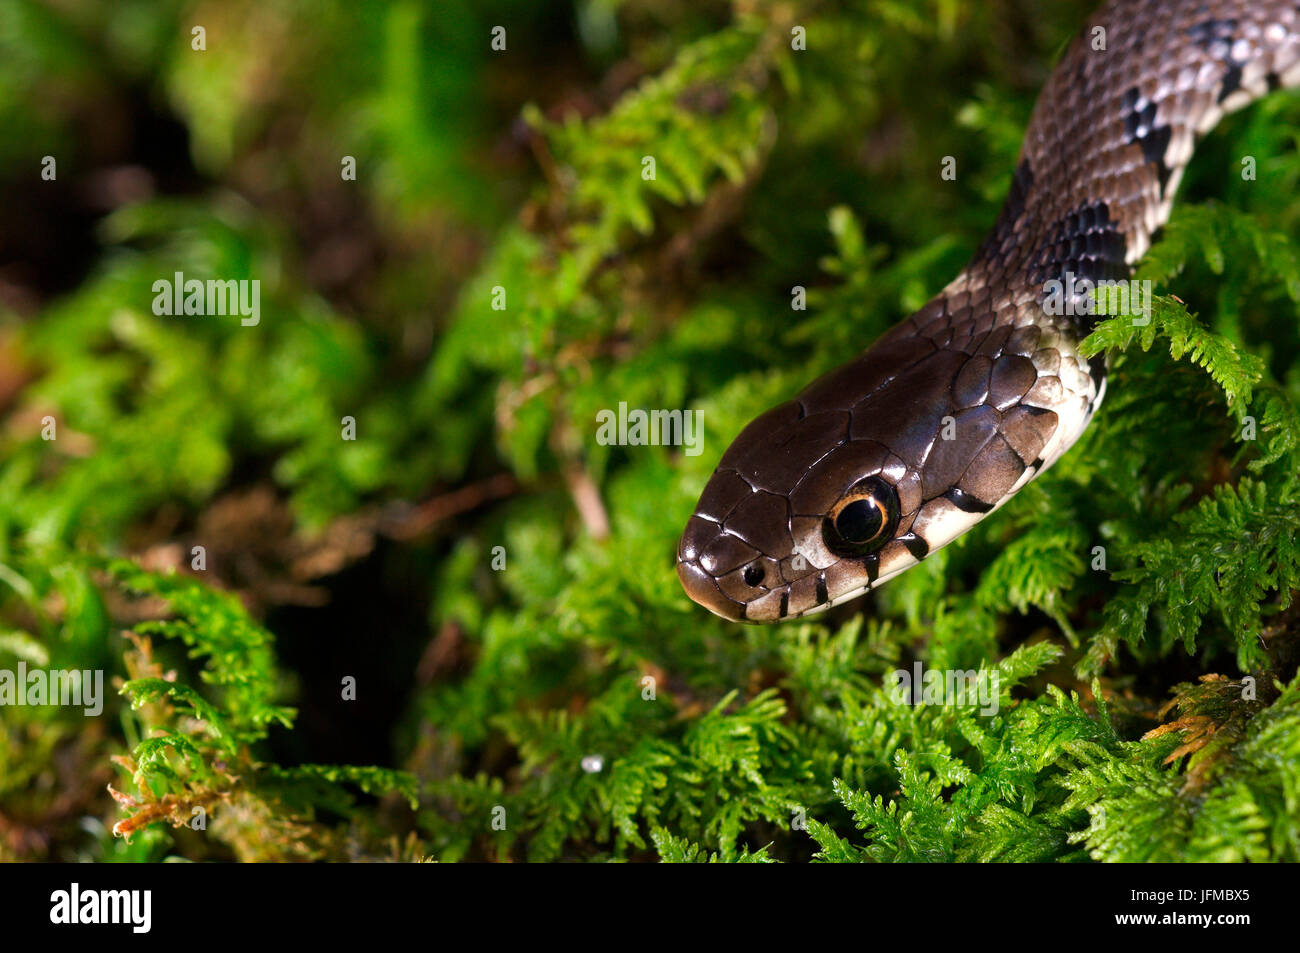 Natrix natrix est un serpent italien commun, ici sur la mousse, vallée de l'Aveto, Gênes, Italie, Europe Banque D'Images